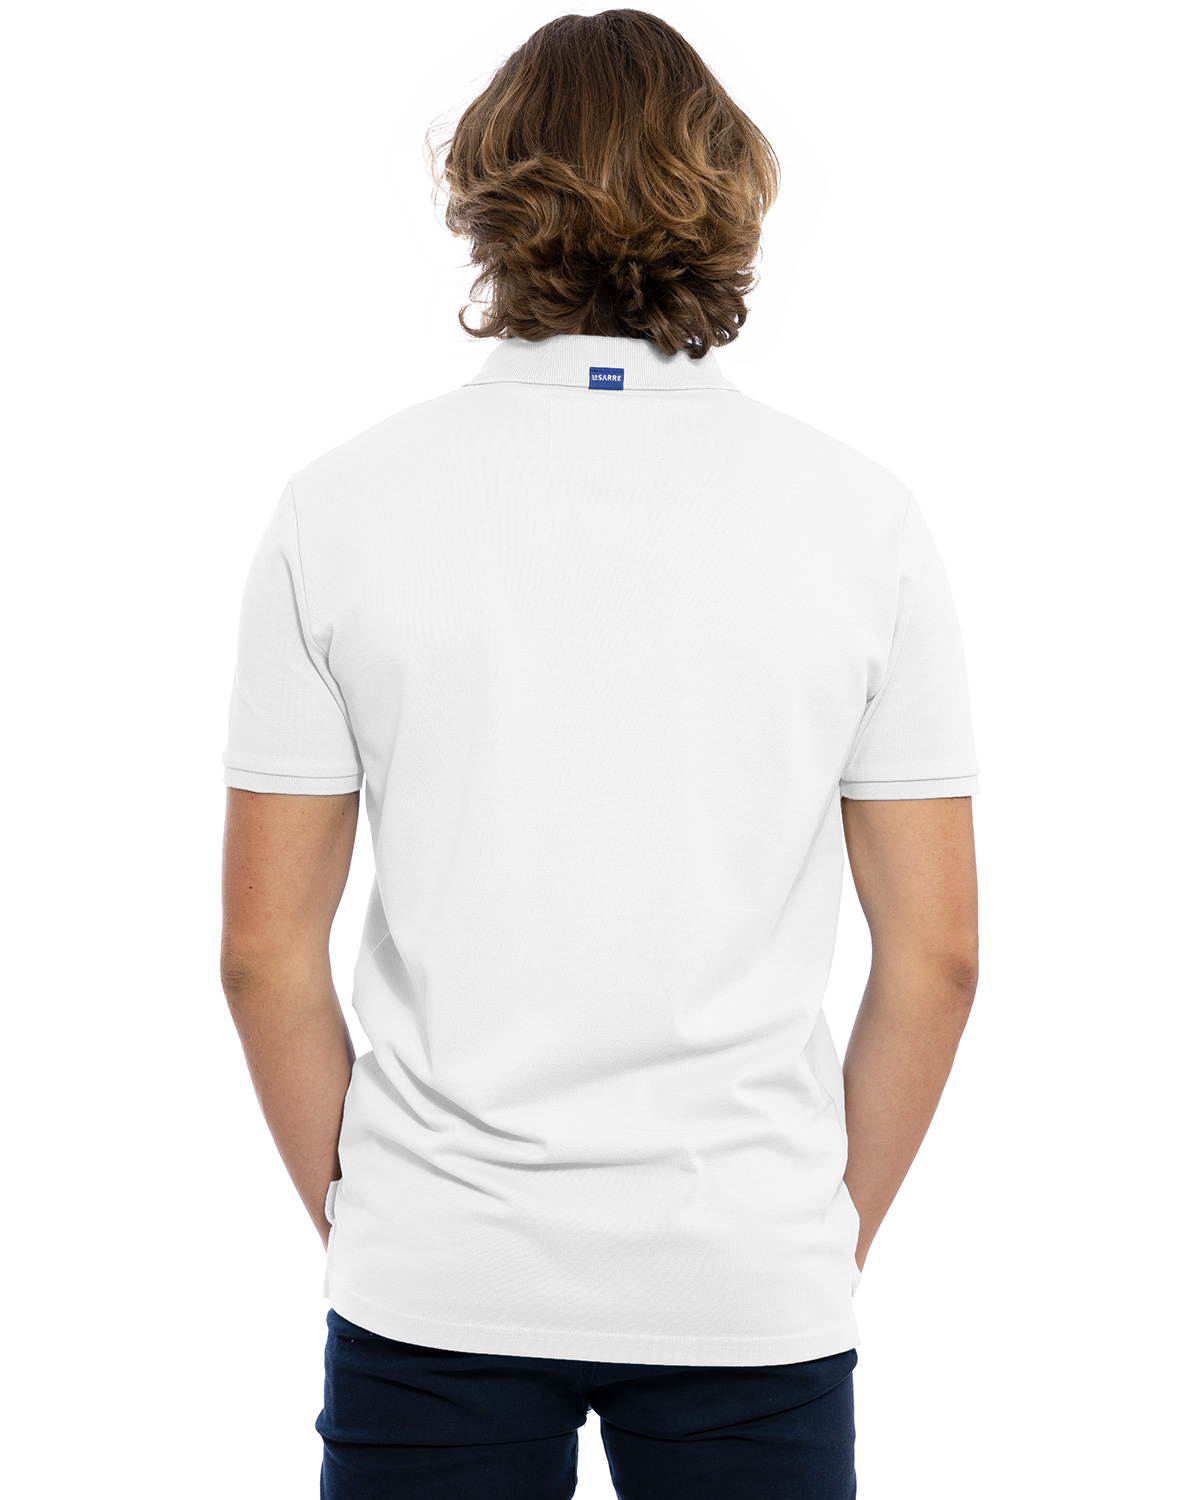 Rücken-Ansicht des hochwertig bestickten Männer Polo Shirt „LASARRE“ in der klassischen Farbe Weiß von der Saarland Marke Lasarre mit dem LASARRE Wappen in Blau, Weiß, Rot auf der linken Brust und dem blauen LASARRE Markenzeichen am Saum